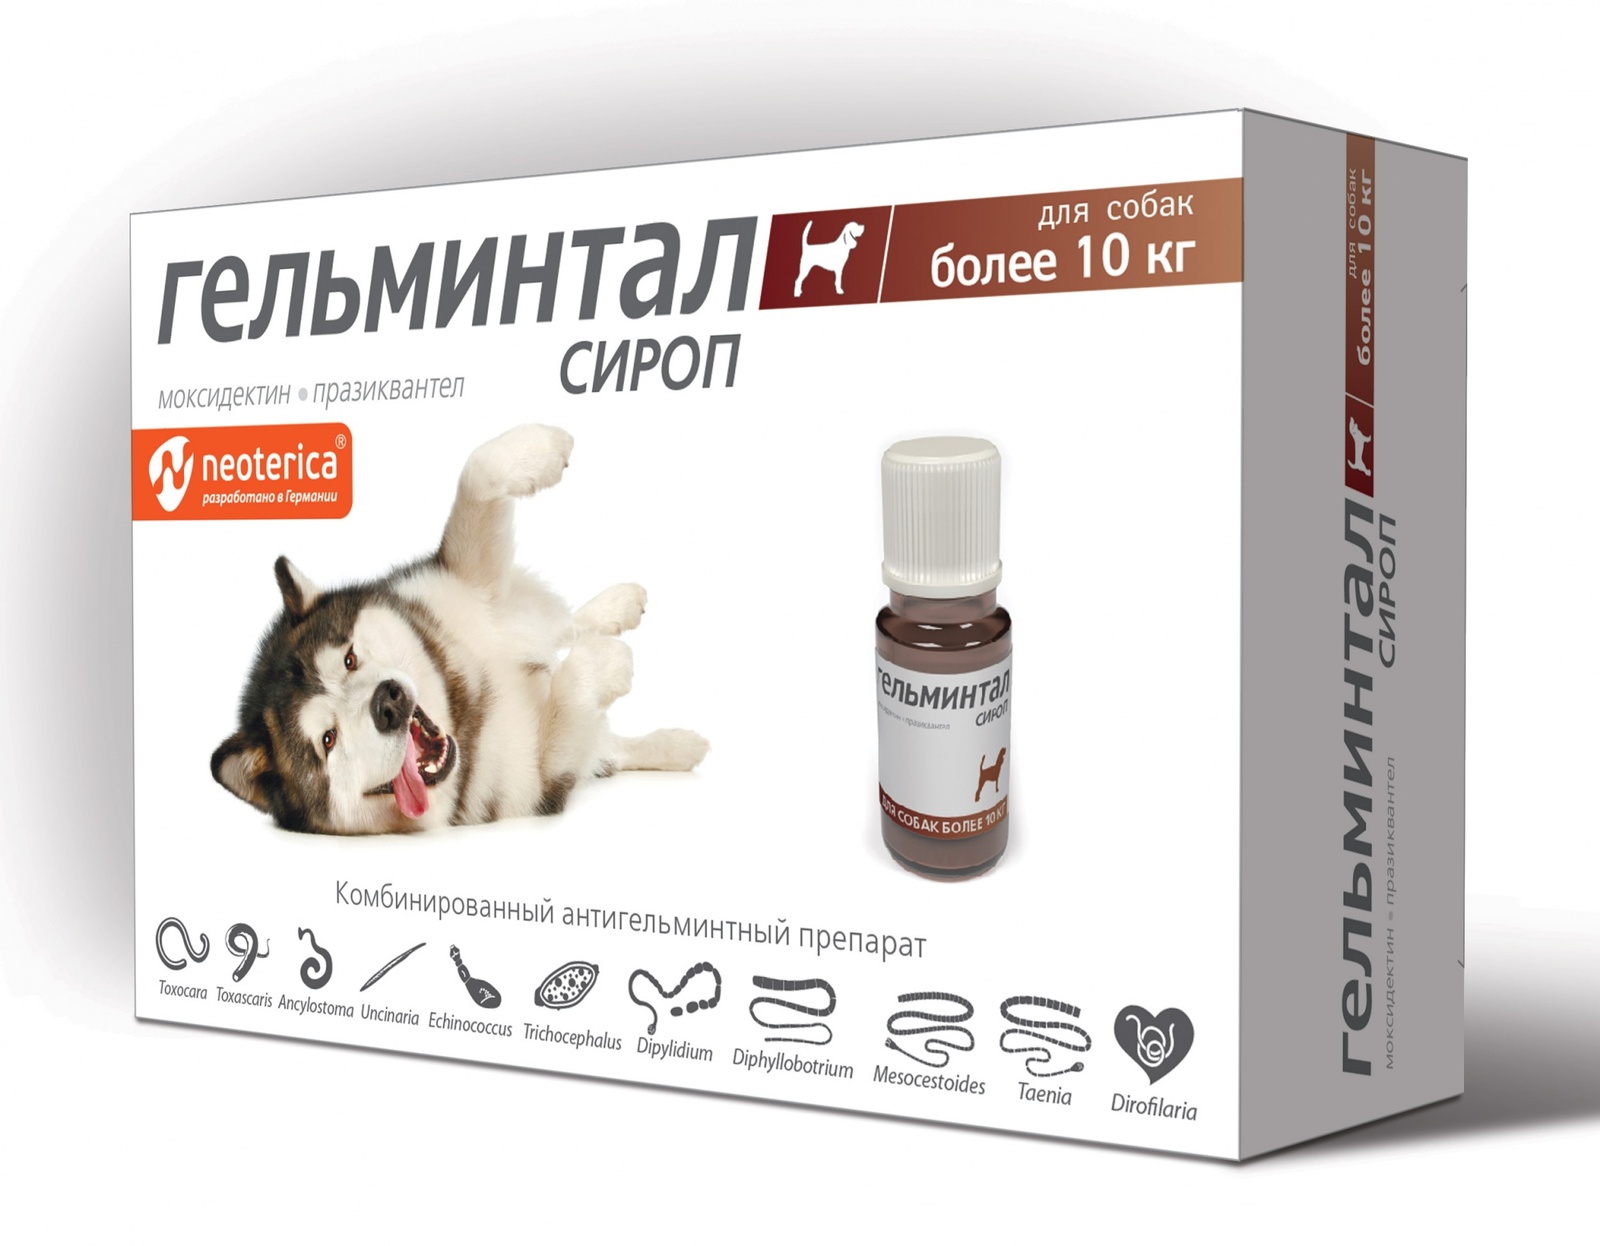 Гельминтал Гельминтал сироп от глистов для собак более 10 кг, 10 мл (60 г) гельминтал гельминтал сироп от глистов для собак более 10 кг 10 мл 60 г